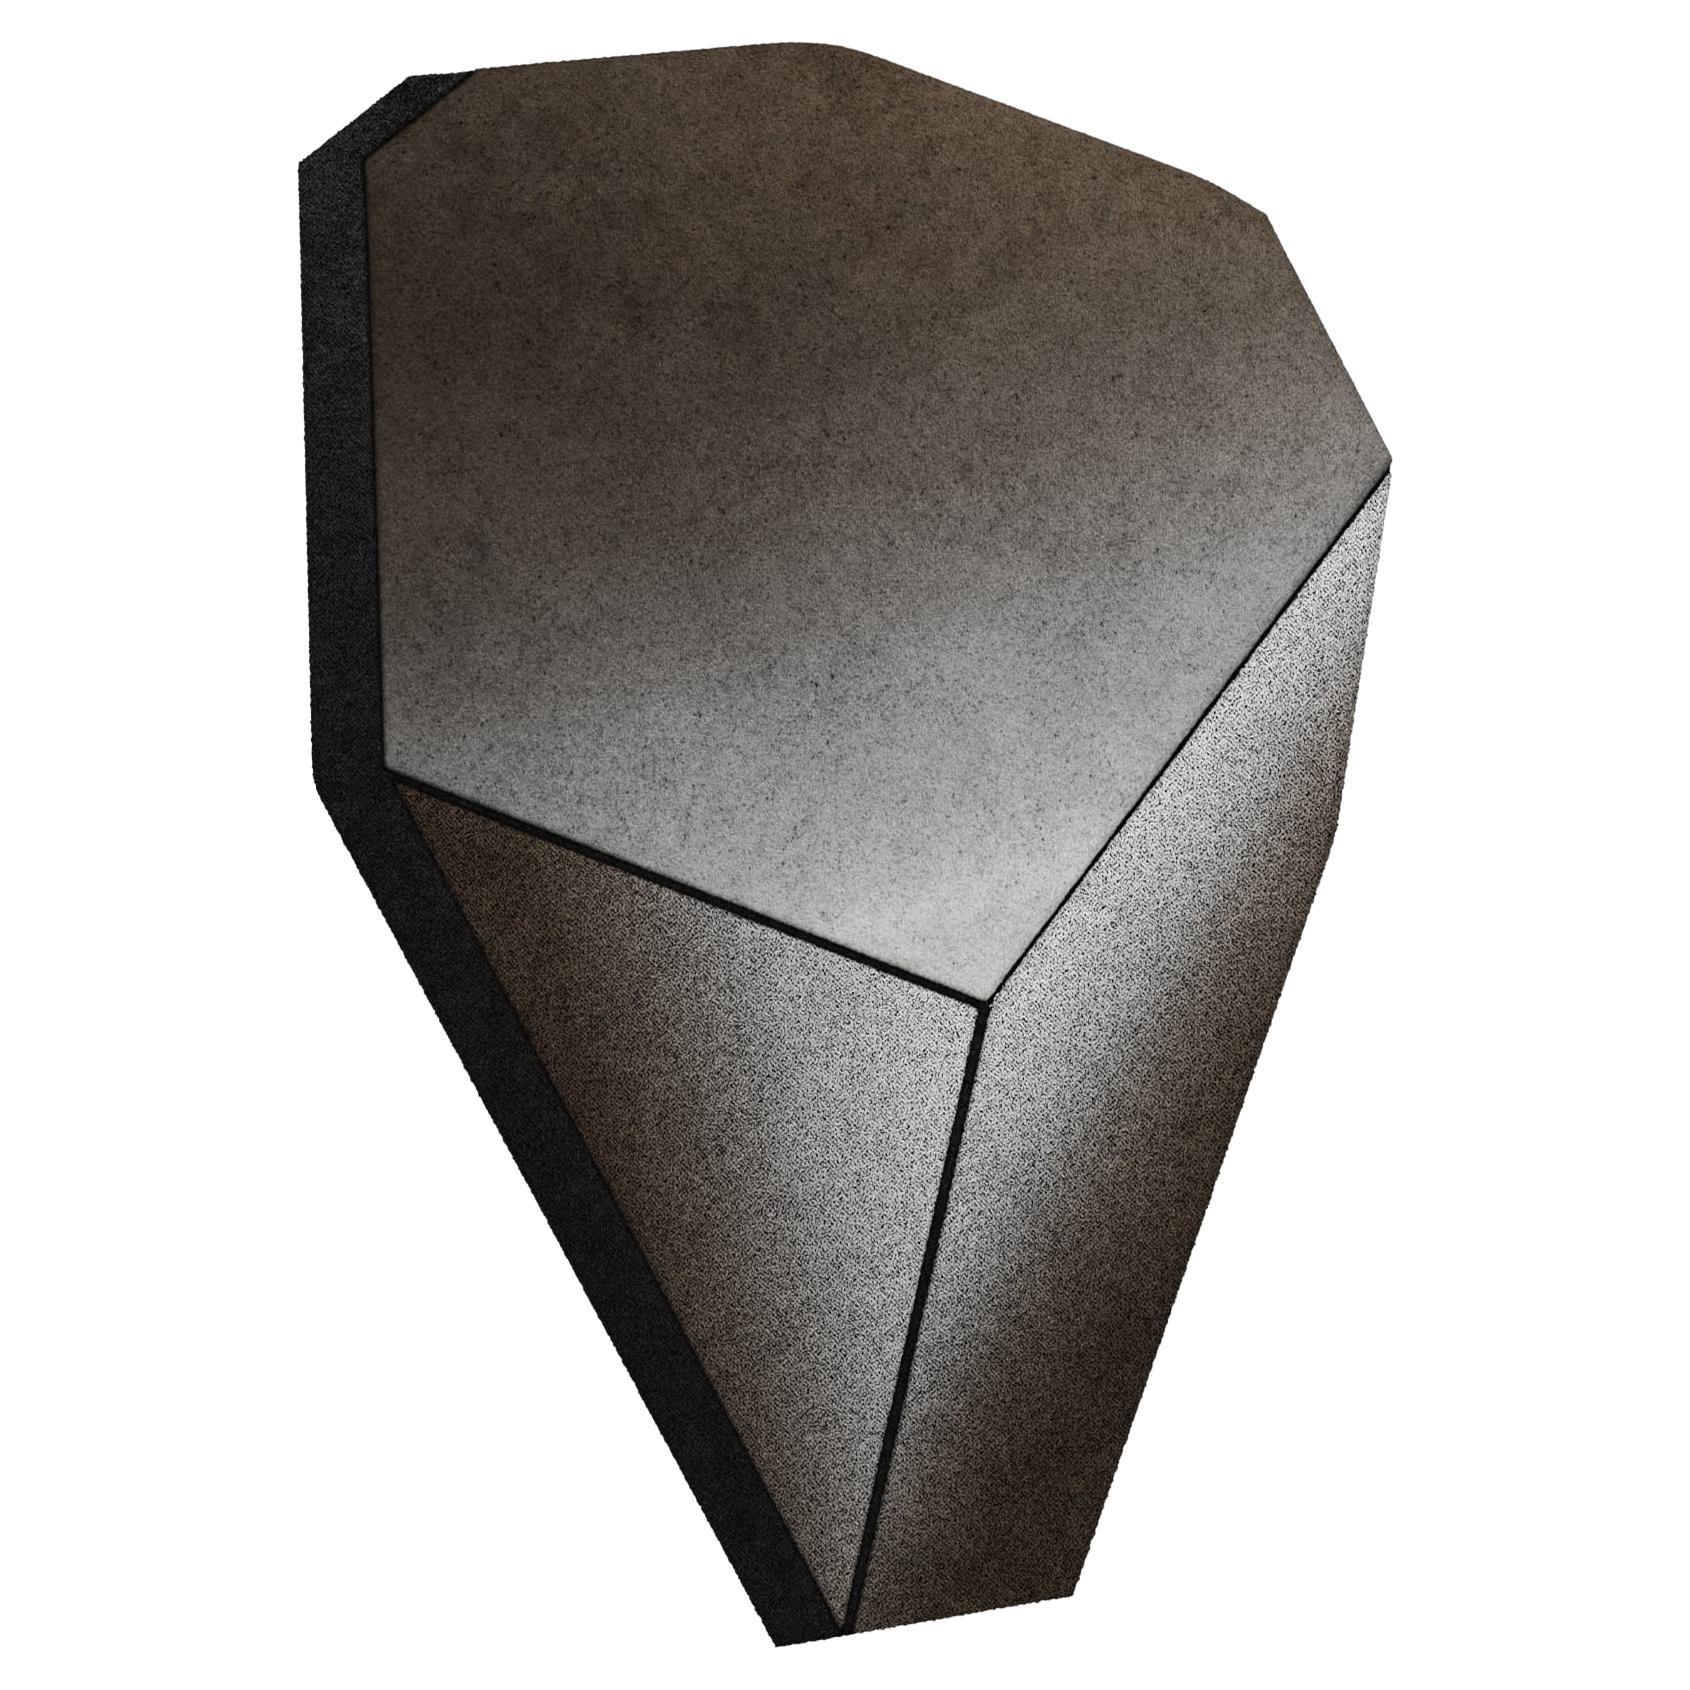 The Moderns Modern Geometrical Eco-Friendly Retro Handmade Rug with Irregular Shape (tapis géométrique moderne fait à la main et respectueux de l'environnement avec une forme irrégulière)